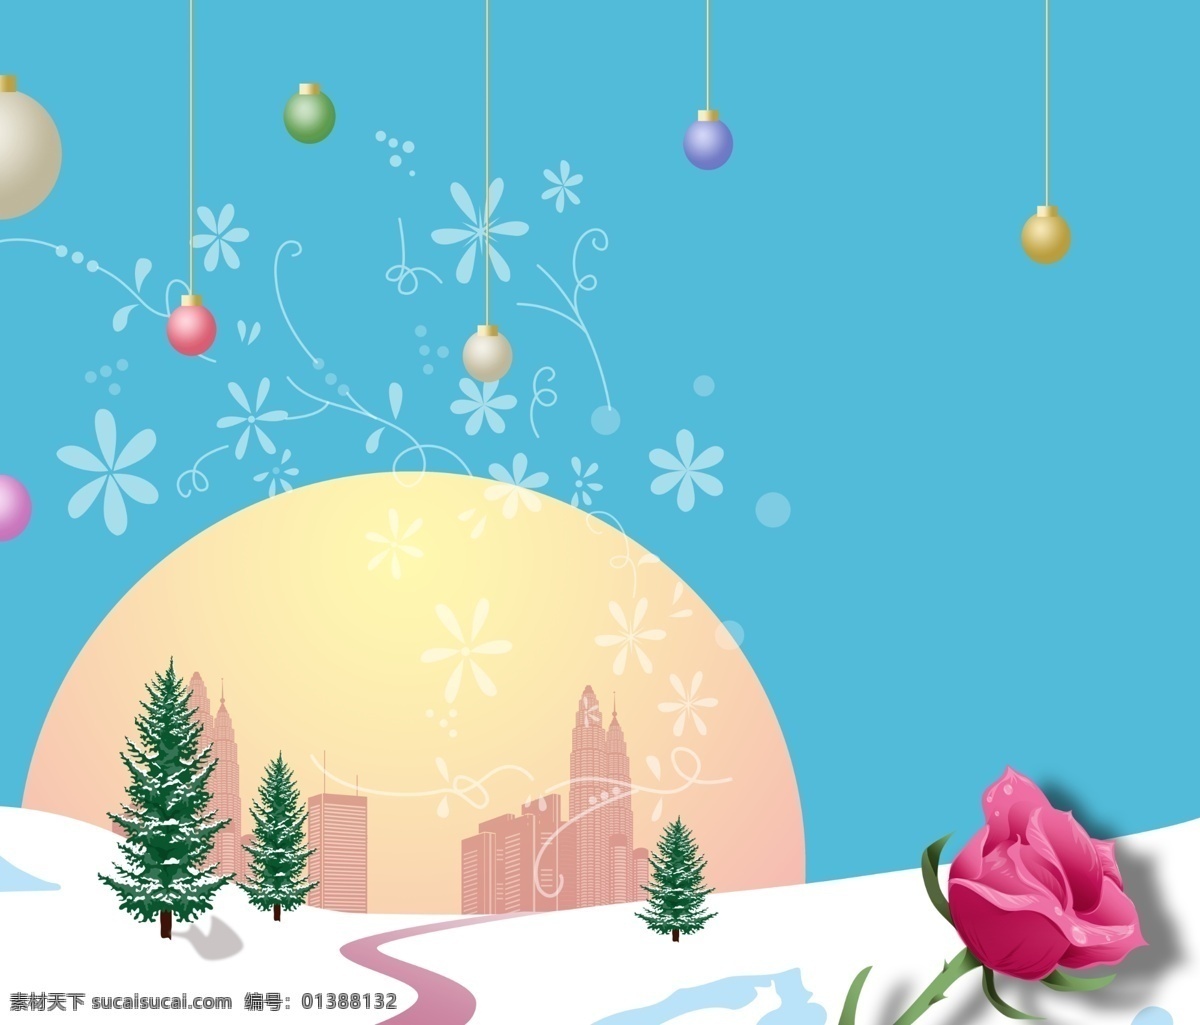 玻璃图案 彩球 城市 广告设计模板 蓝色背景 落日 玫瑰 强化玻璃 圣诞节移门 圣诞 雪松 雪地 弯路 移门图案 源文件 家居装饰素材